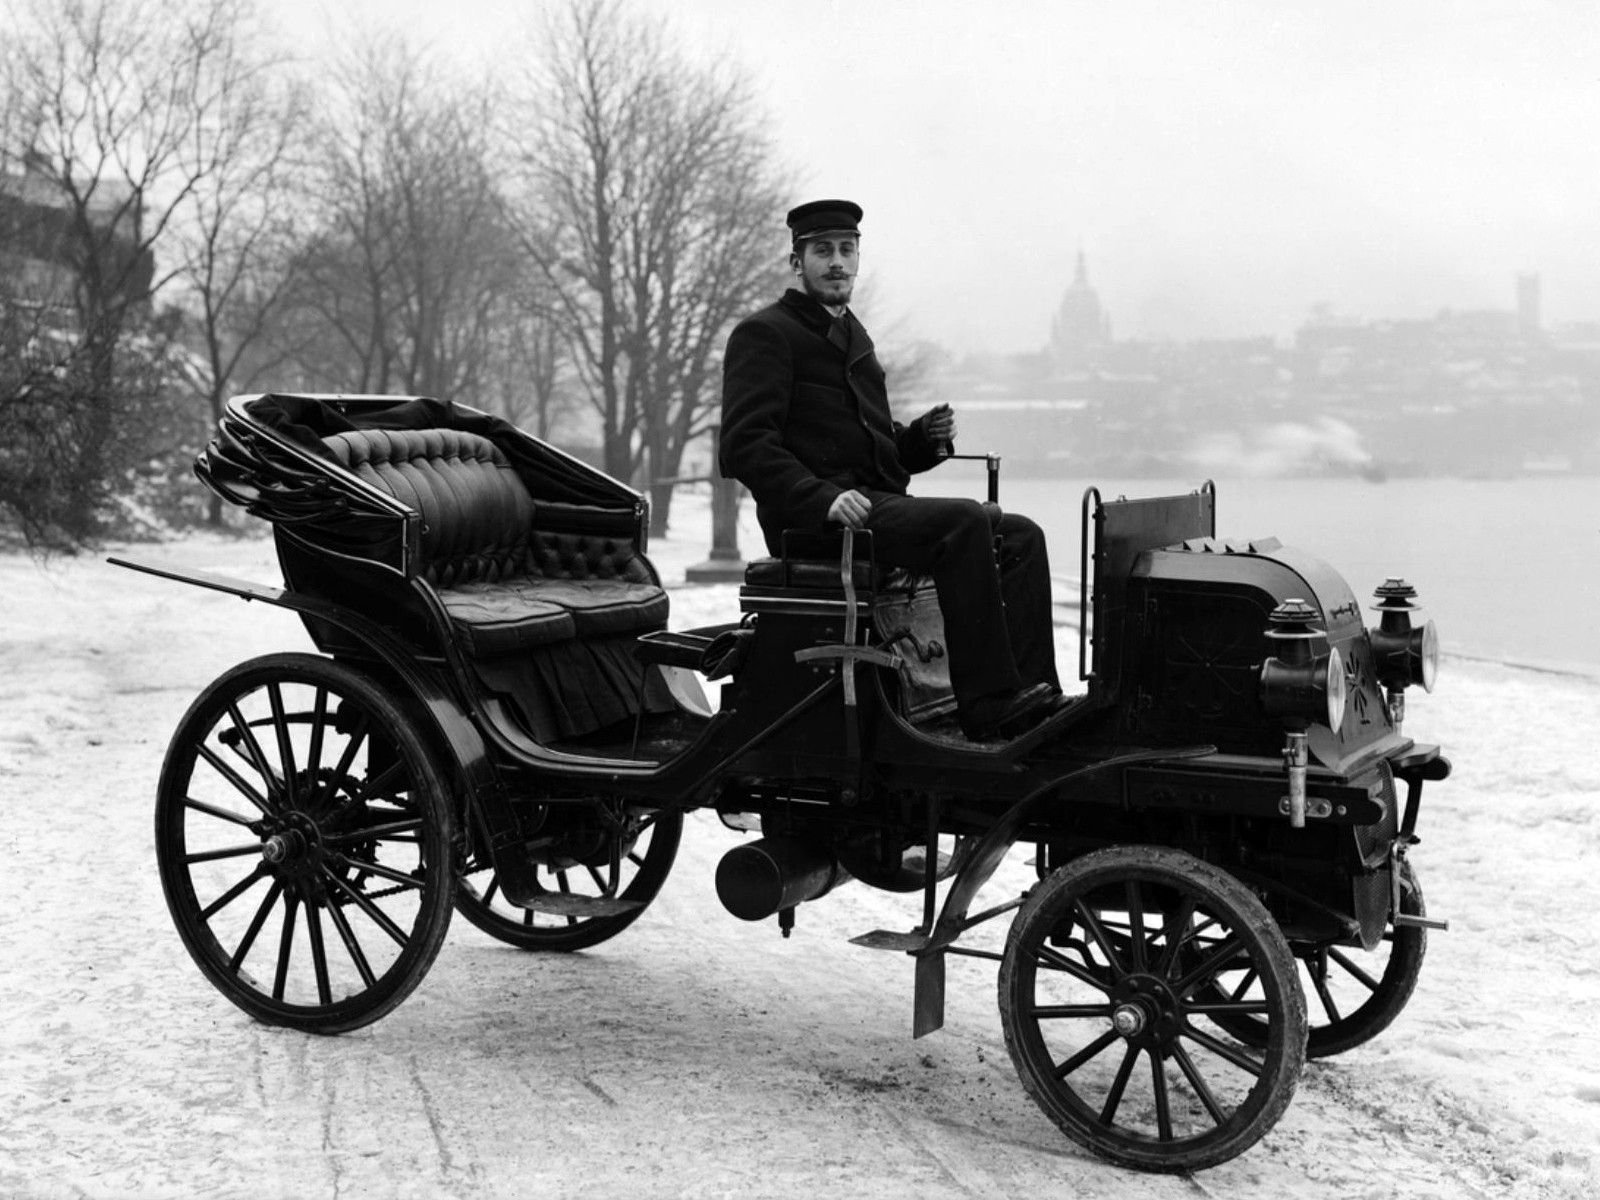 Даймлер 1897. Автомобиль Даймлер 1898 год. Автомобиль Мерседес 1899 Даймлер. Автомобиль Даймлер Феникс 1897 года. Первые автомобили называли